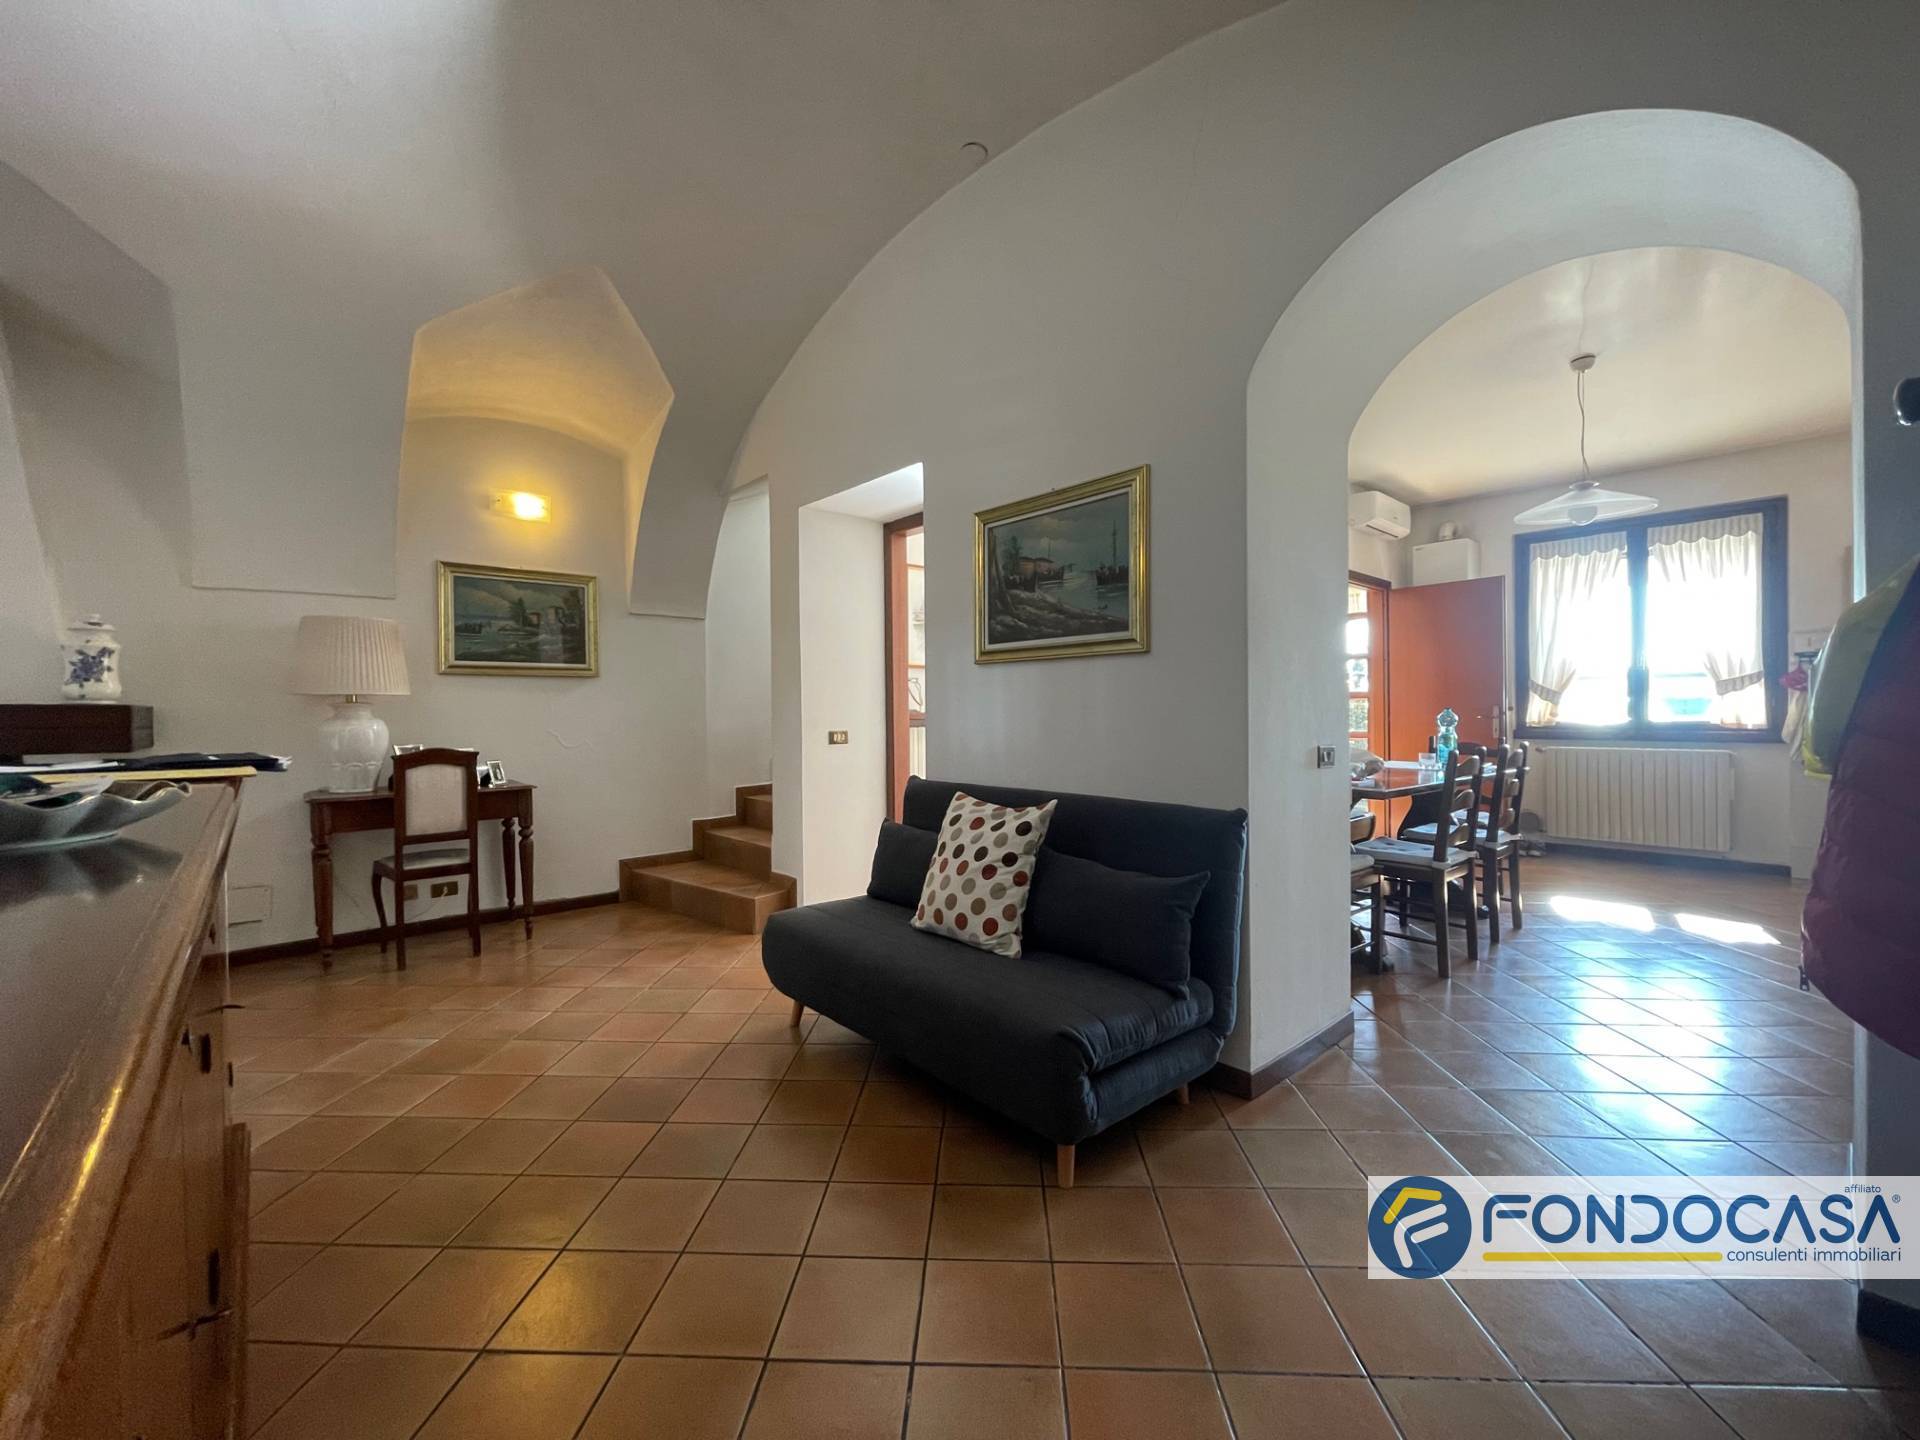 Appartamento in vendita a Castelli Calepio, 5 locali, prezzo € 140.000 | PortaleAgenzieImmobiliari.it